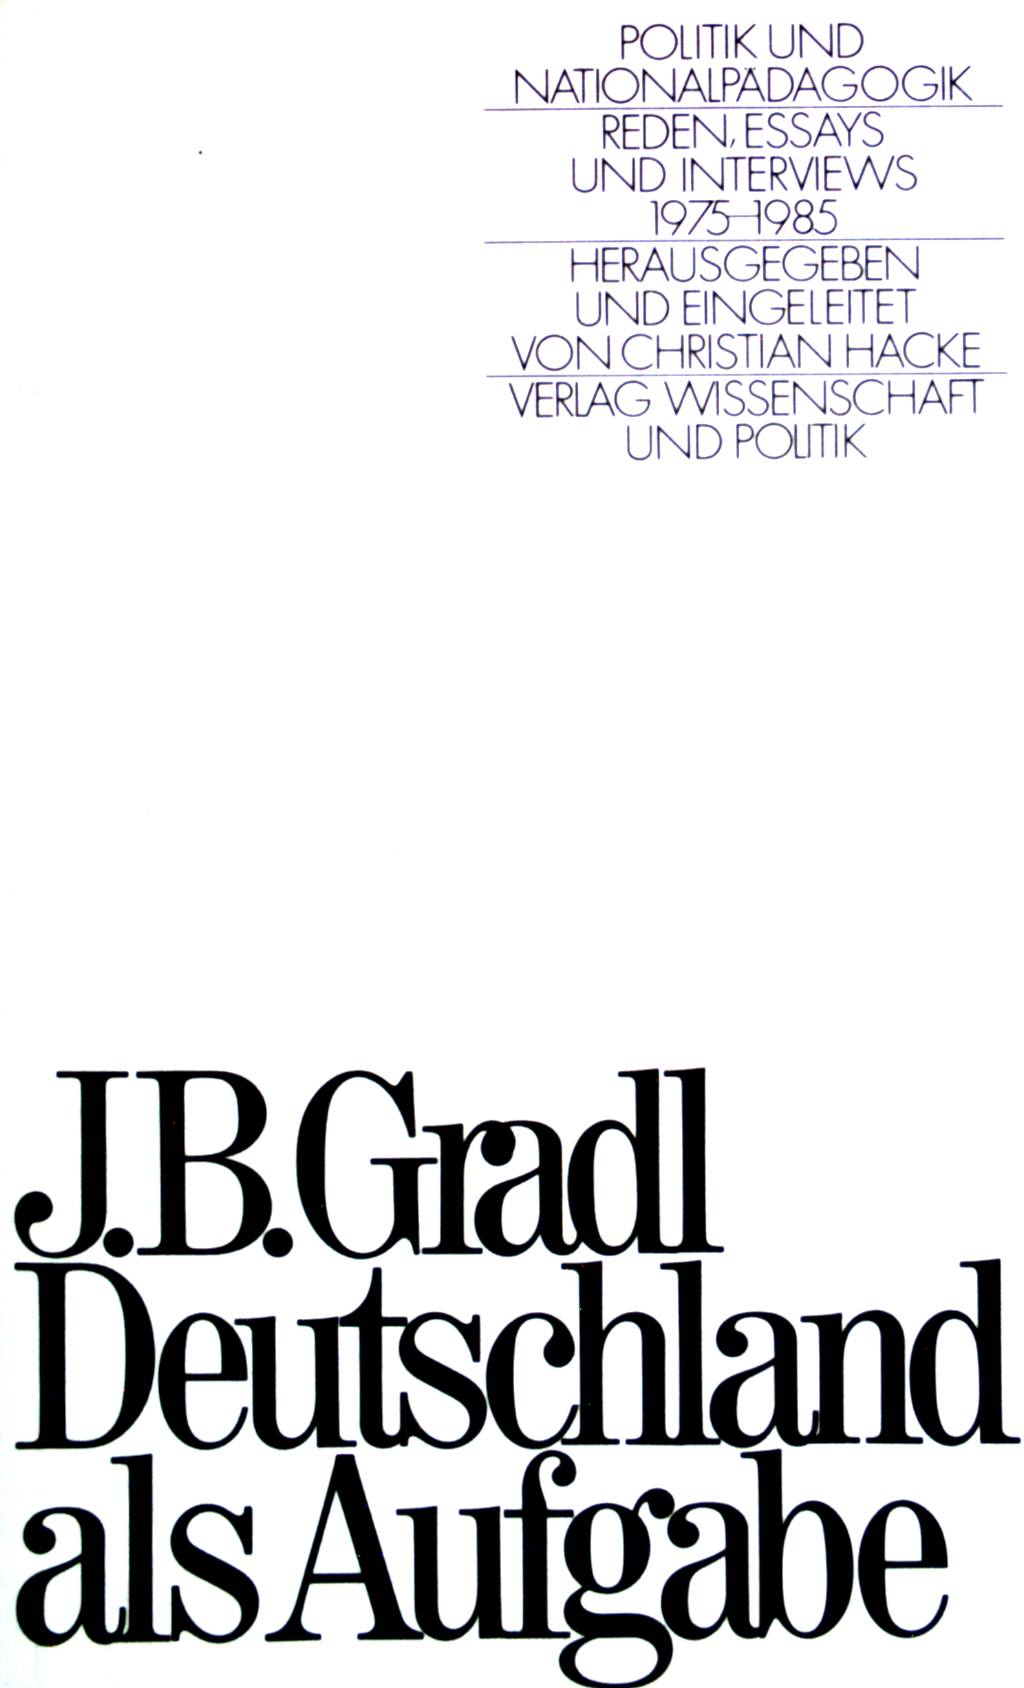 Deutschland als Aufgabe. Politik und Nationalpädagogik. Reden, Essays und Interviews 1975-1985. - Gradl, J.B.